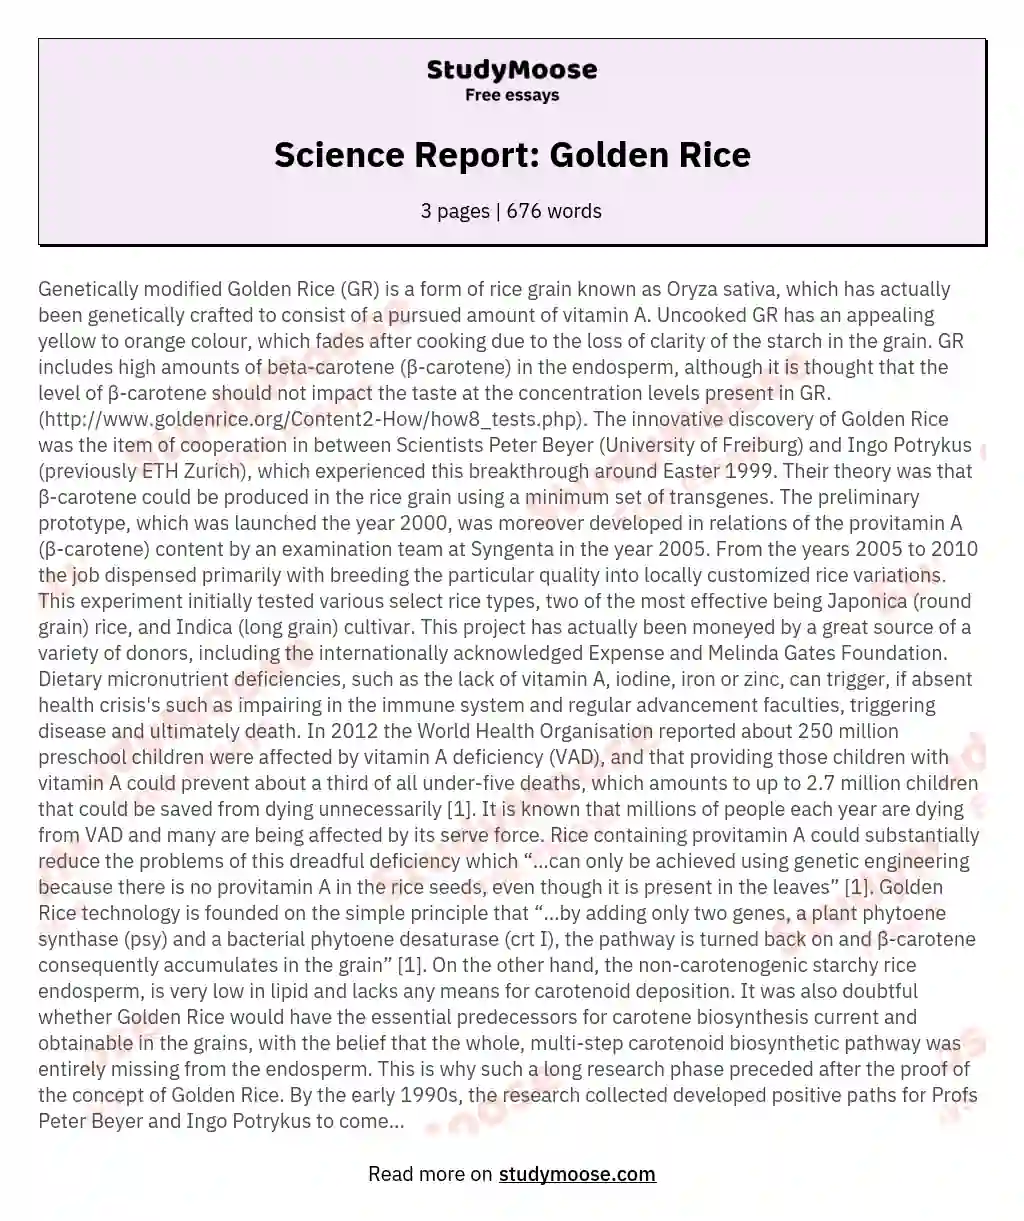 Science Report: Golden Rice essay